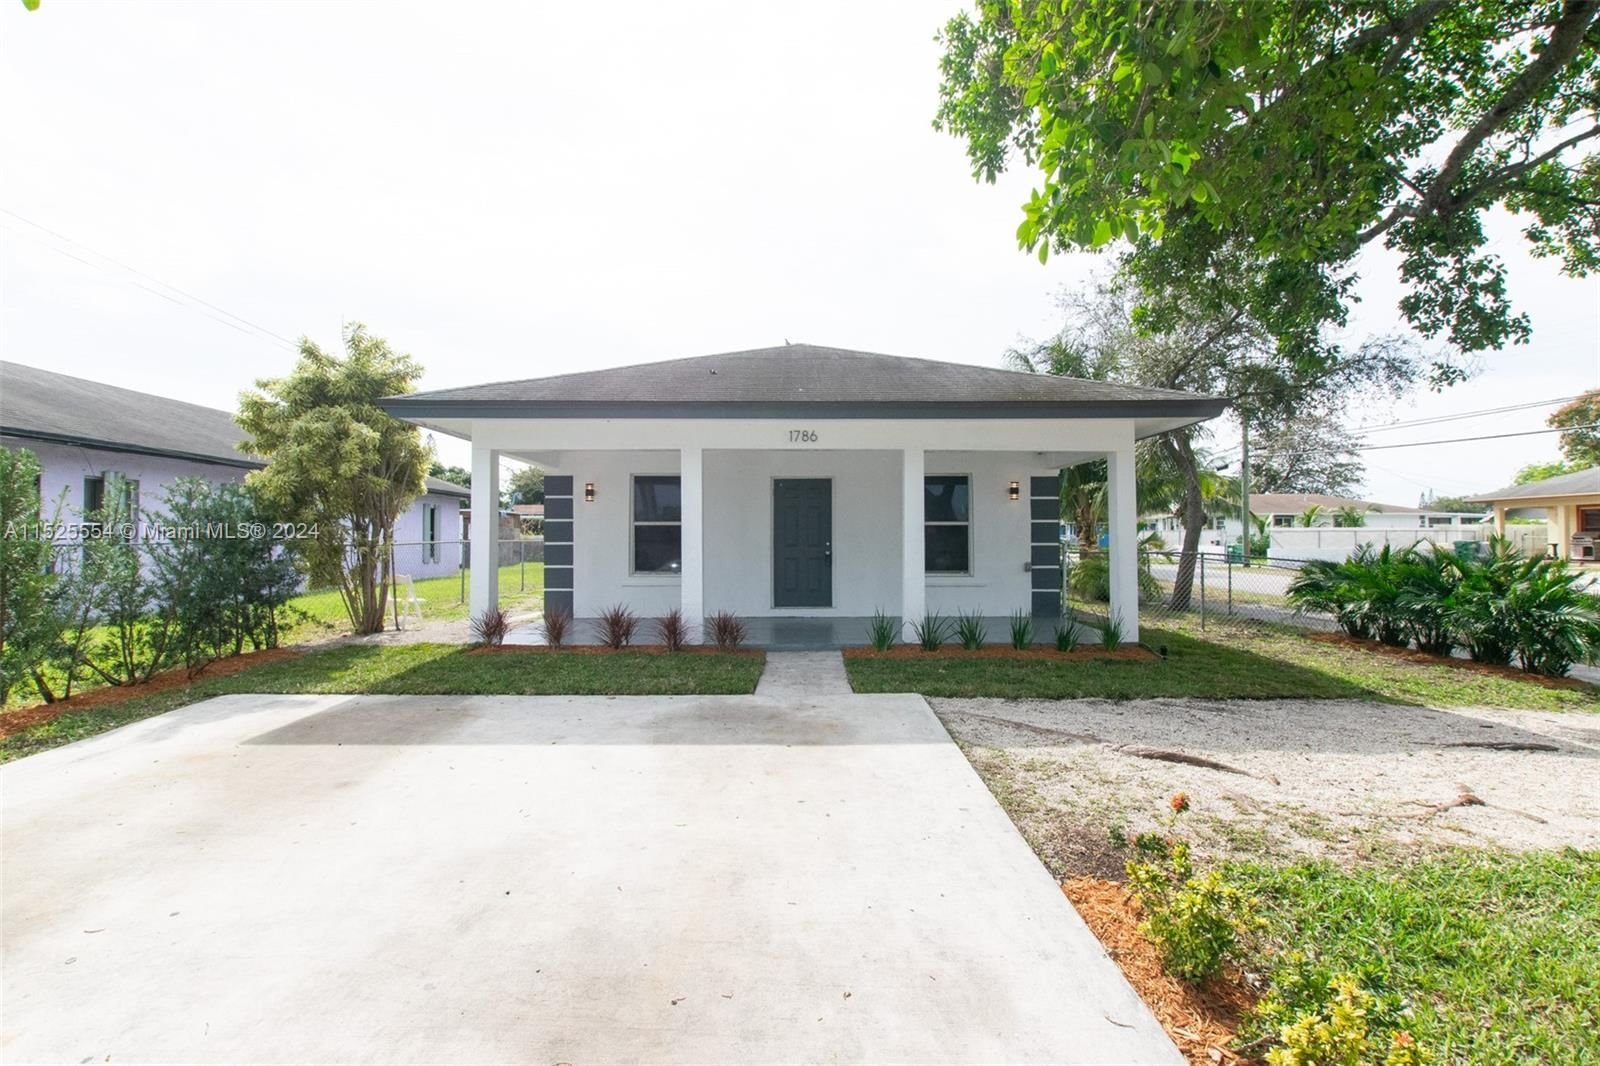 Real estate property located at 1786 77th St, Miami-Dade County, VICTORIA MANOR, Miami, FL